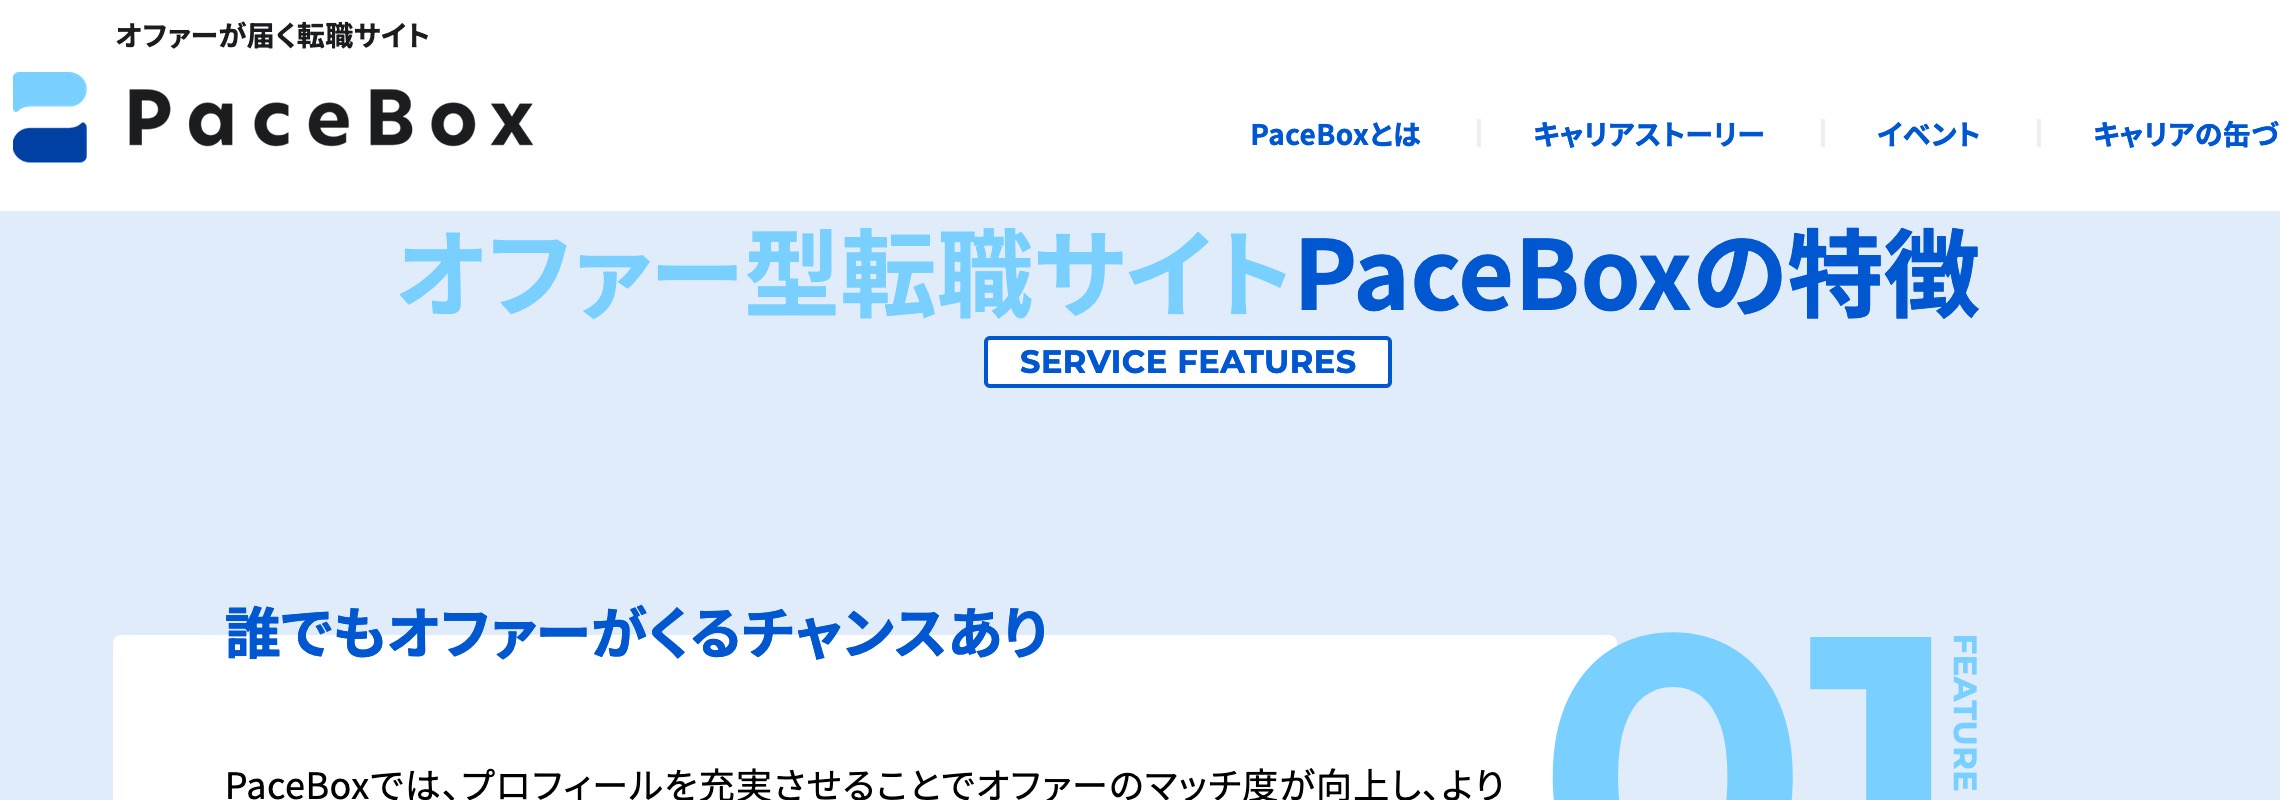 PaceBox(ペースボックス)のHP画像